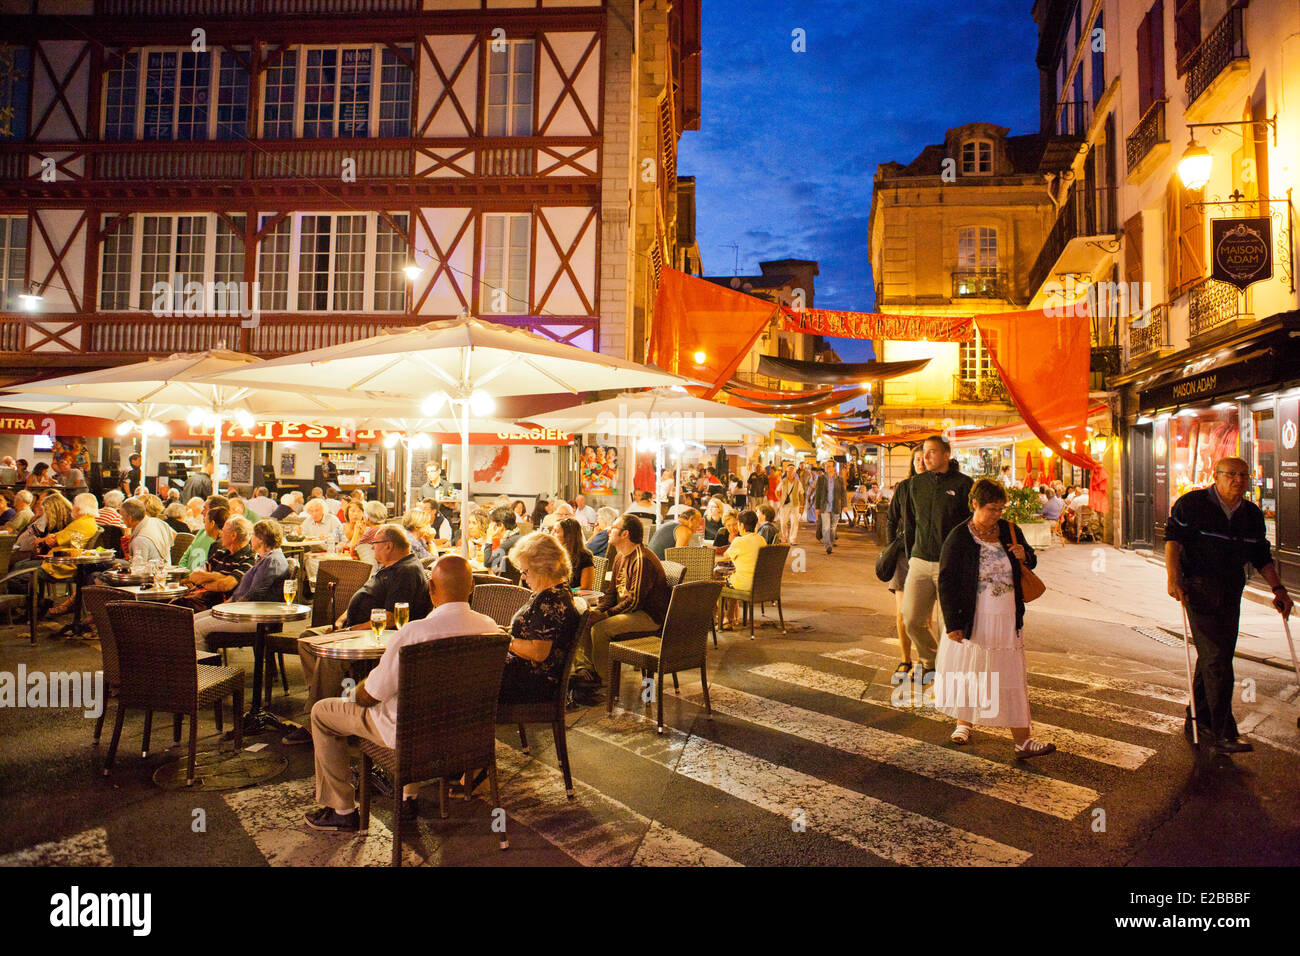 France, Pyrenees Atlantiques, Saint Jean de Luz, Rue de la Republique and  restaurants Stock Photo - Alamy